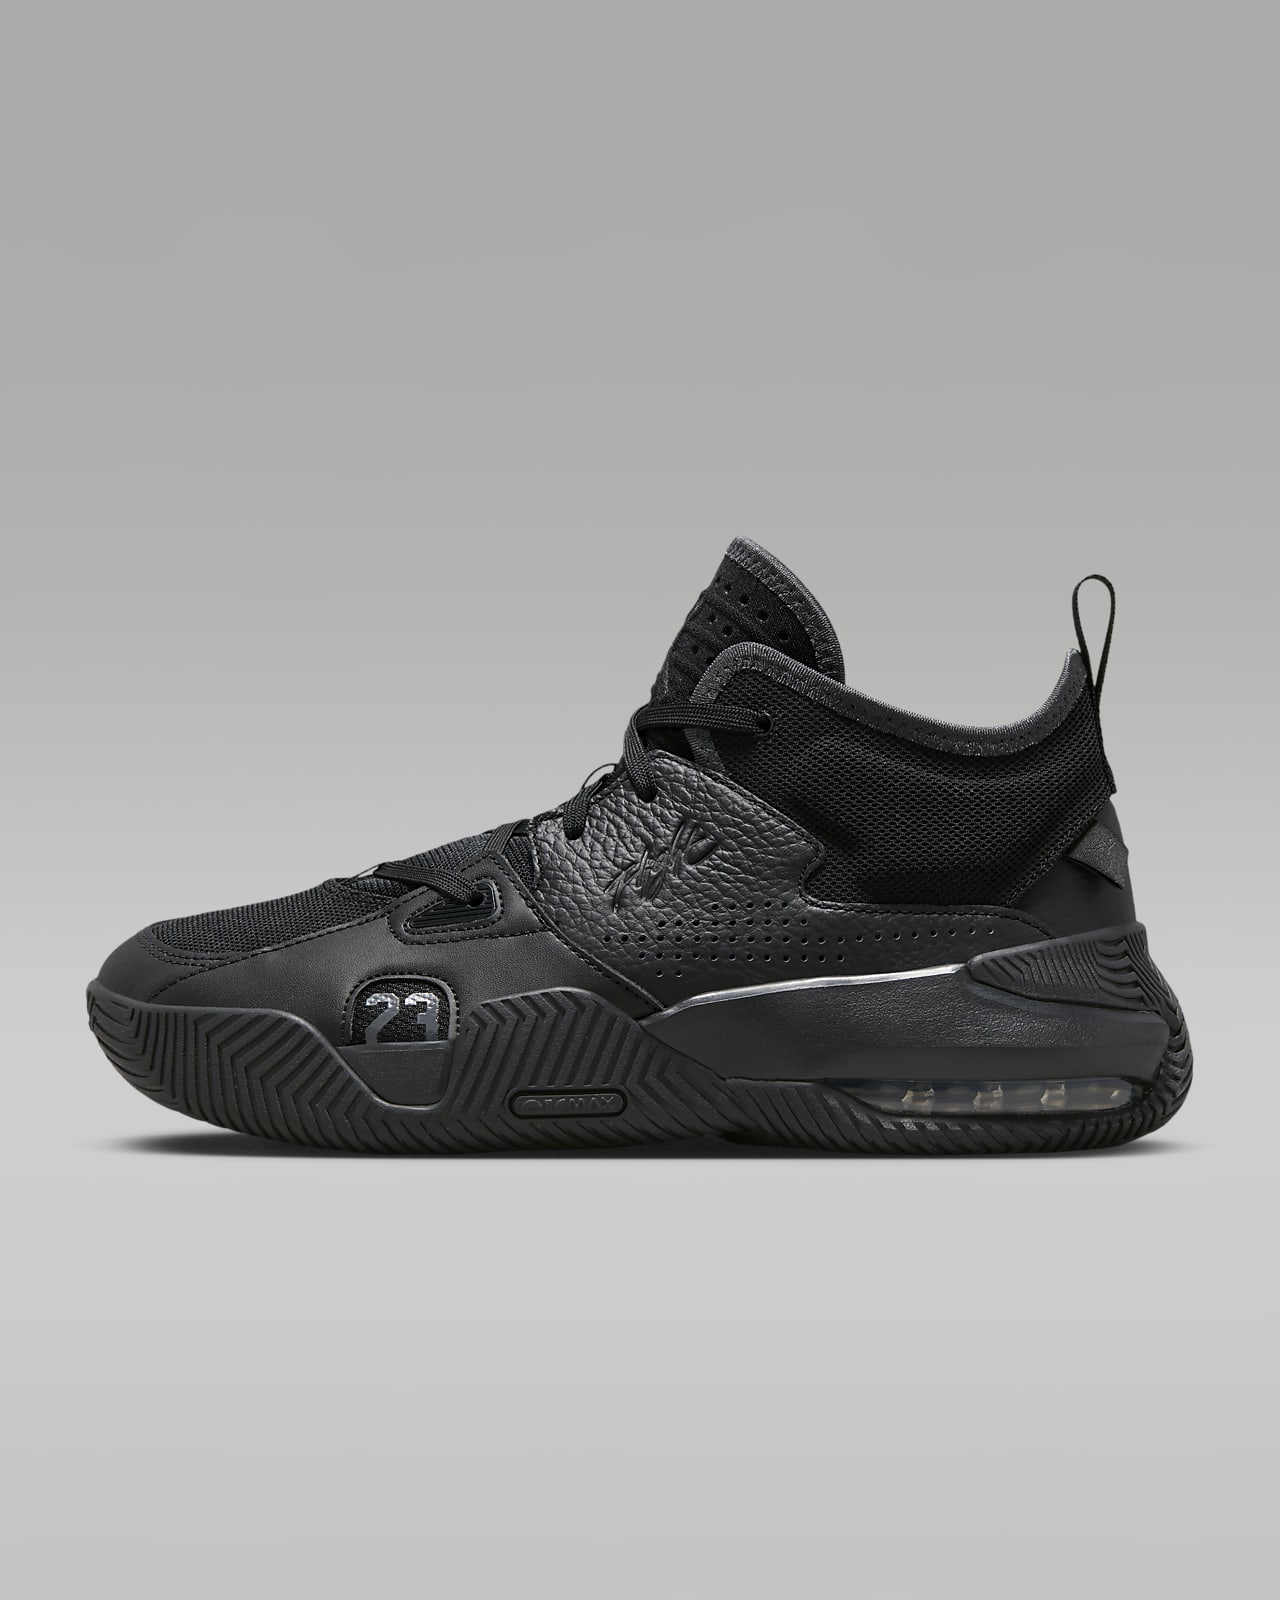 Nike Air Jordan 13 Low Singles Day Men's Sneakers Shoes